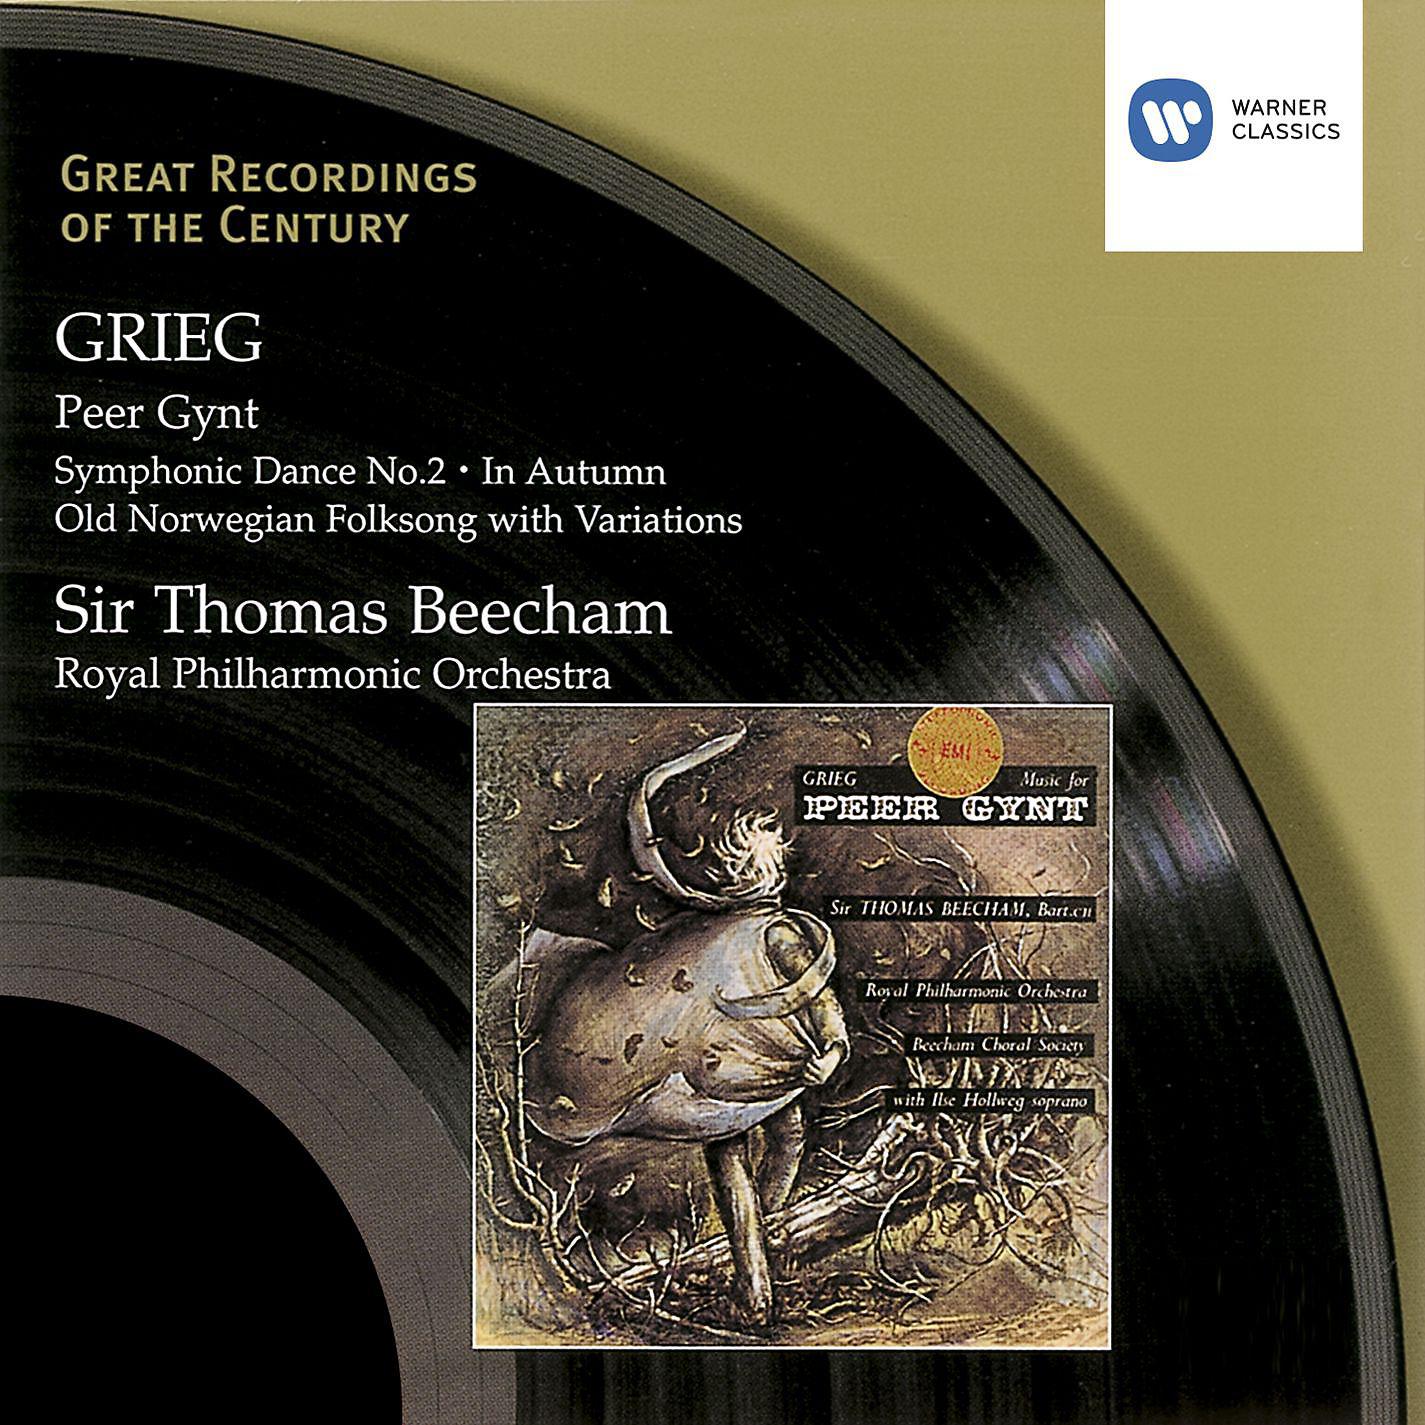 Grieg peer gynt. Peer Gynt. Tasmanian Symphony Orchestra peer Gynt. Peer-Gynt_Marton.